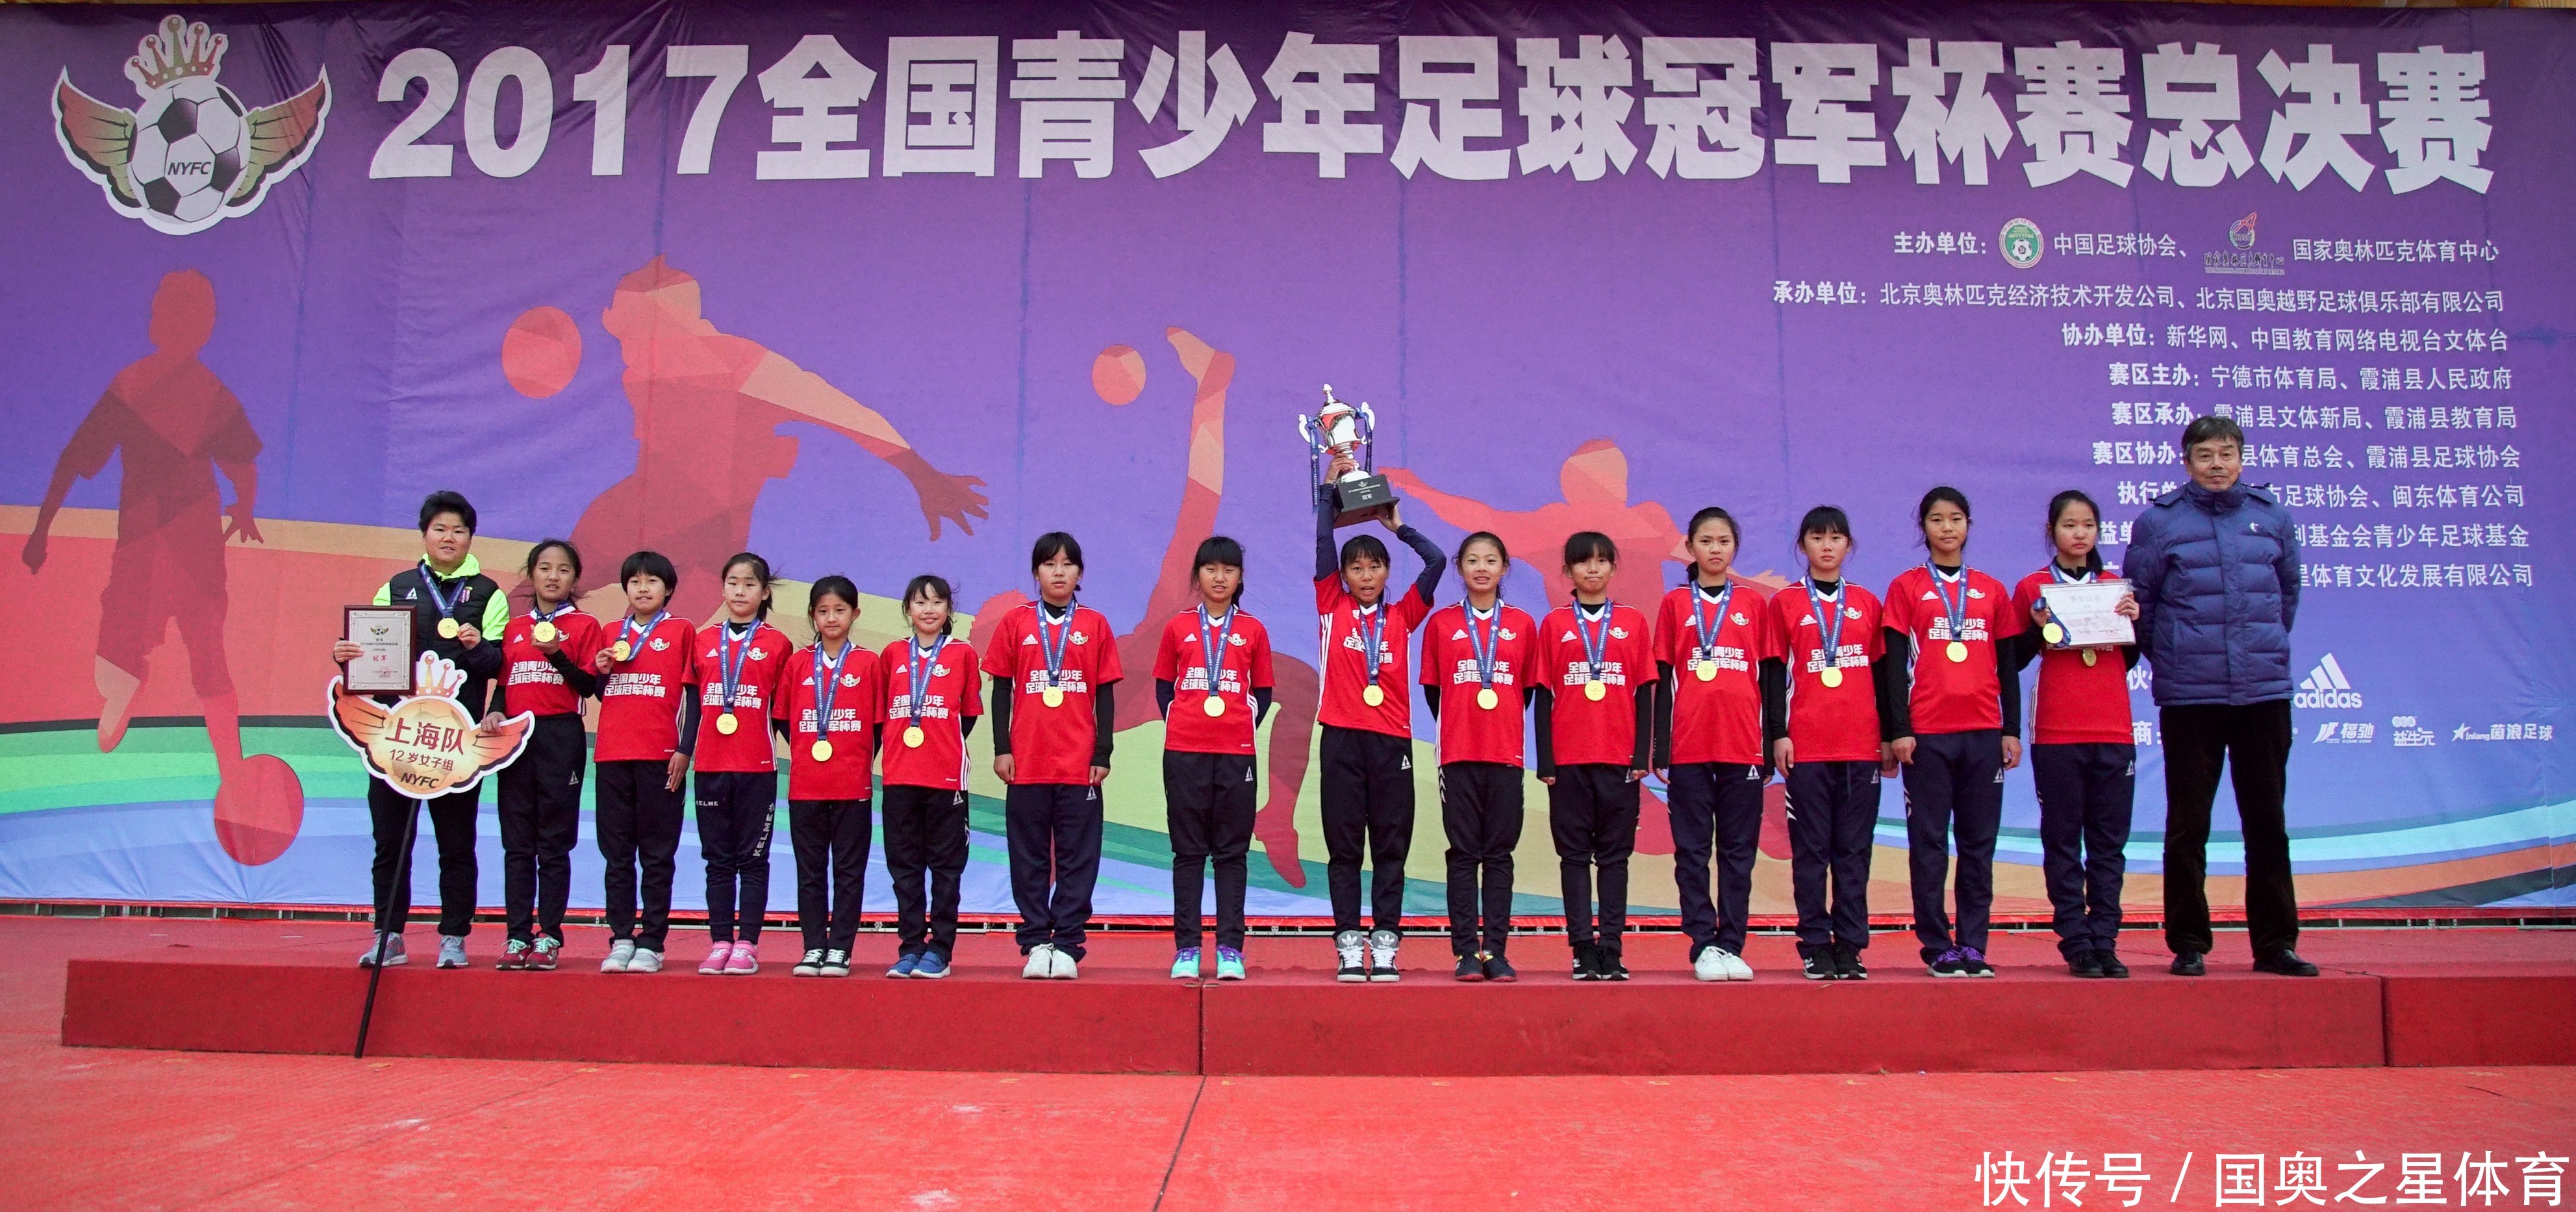 比赛激烈冠军杯赛球员出色入选中国足协国家U